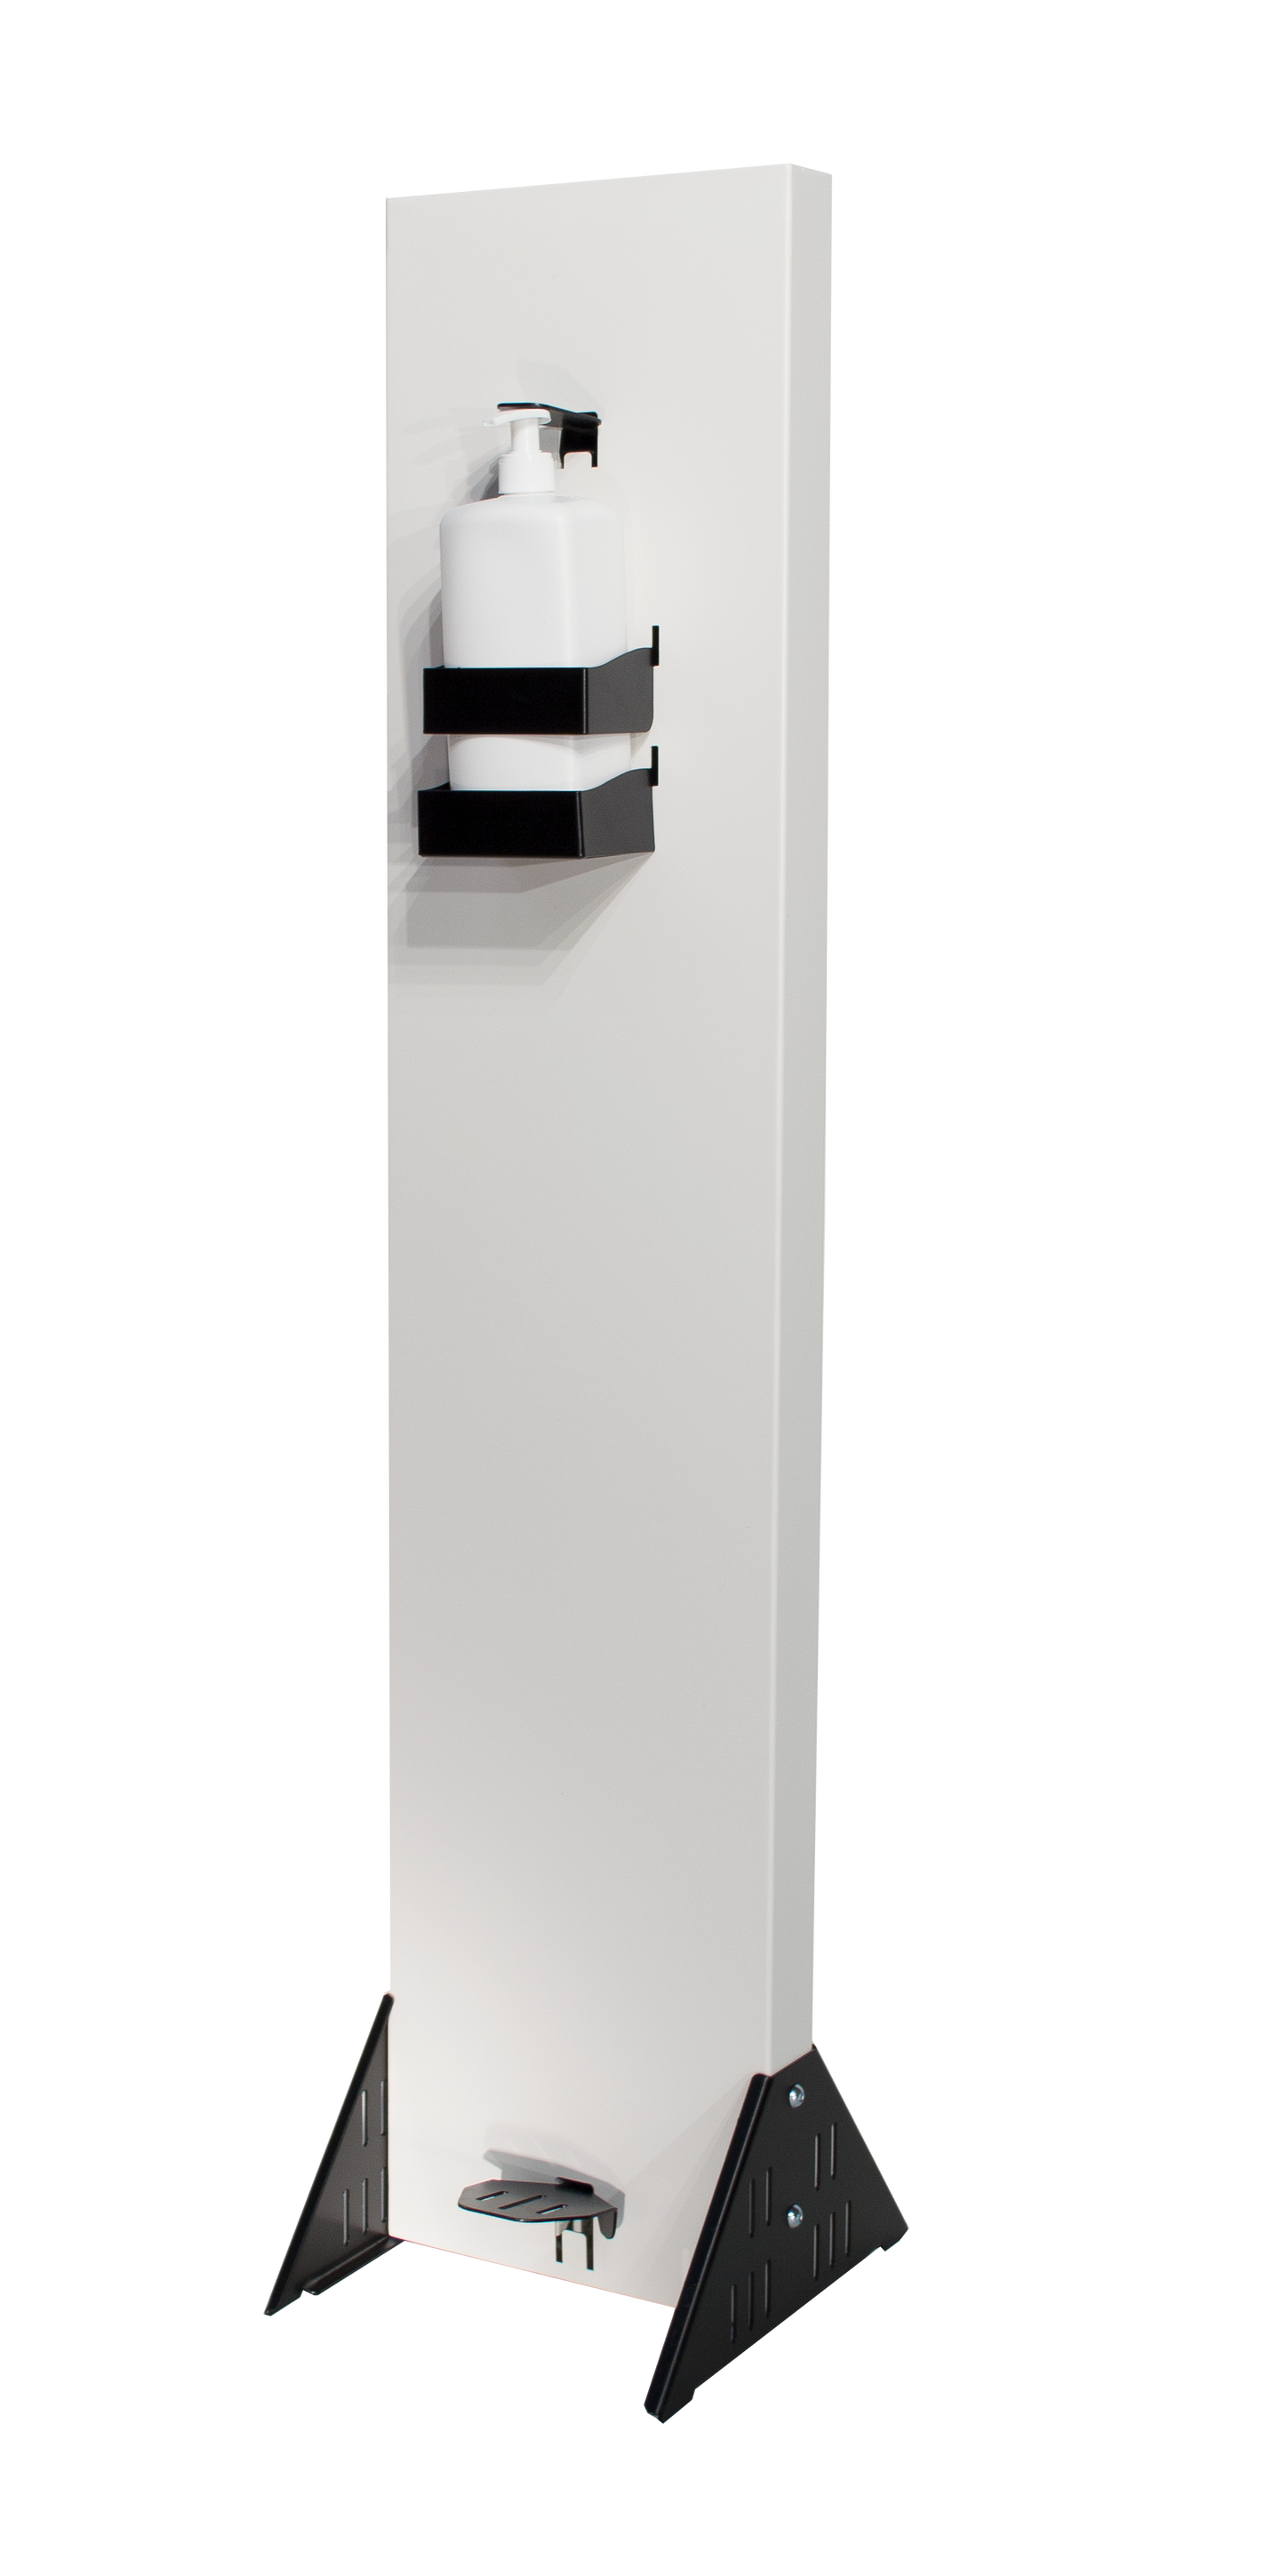 Commercial Grade Hand Sanitizer Dispenser Station - WHITE / BLACK